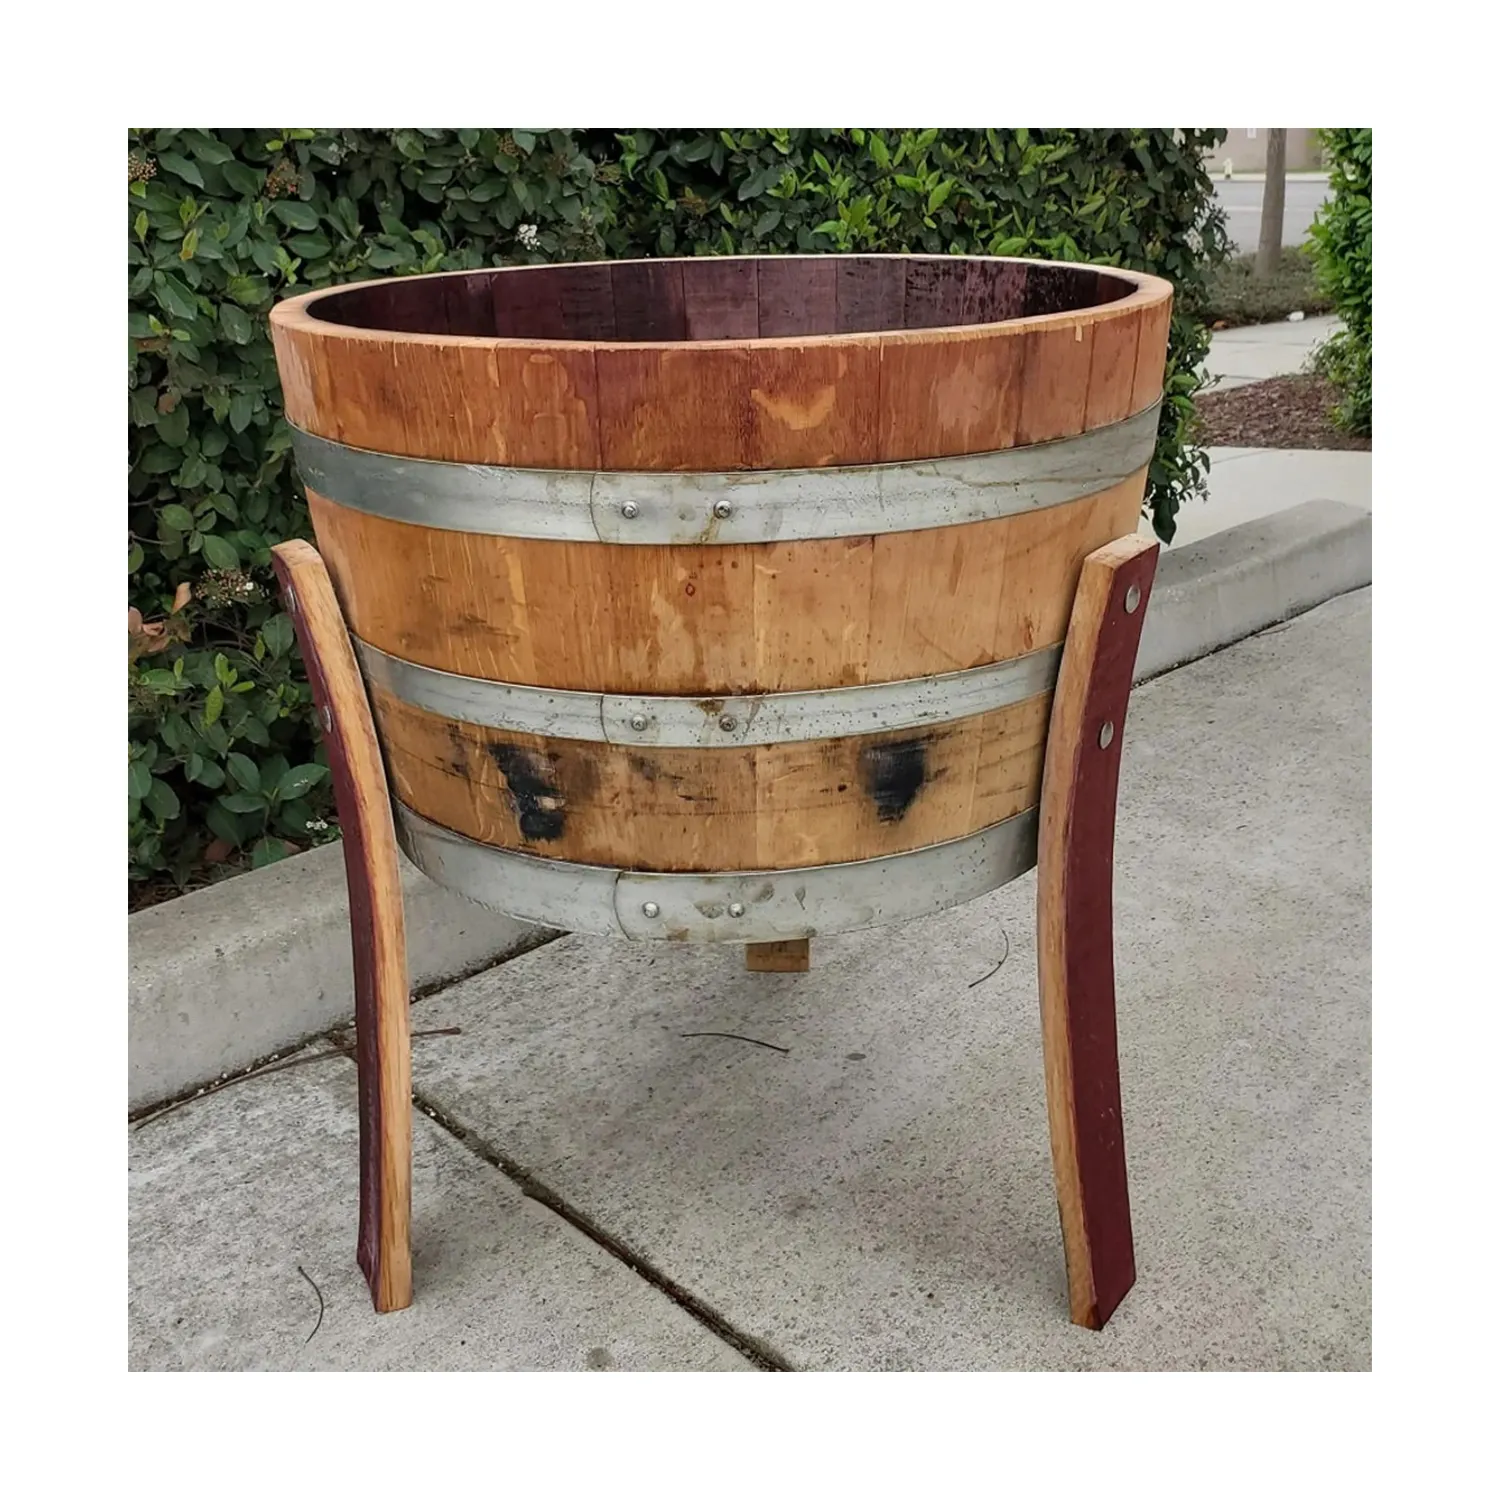 脚付き手作りハーフバレルワインバレルプランター | 屋外の大きな丸い木製の植木鉢 | 1/2木製バレルガーデンプランター